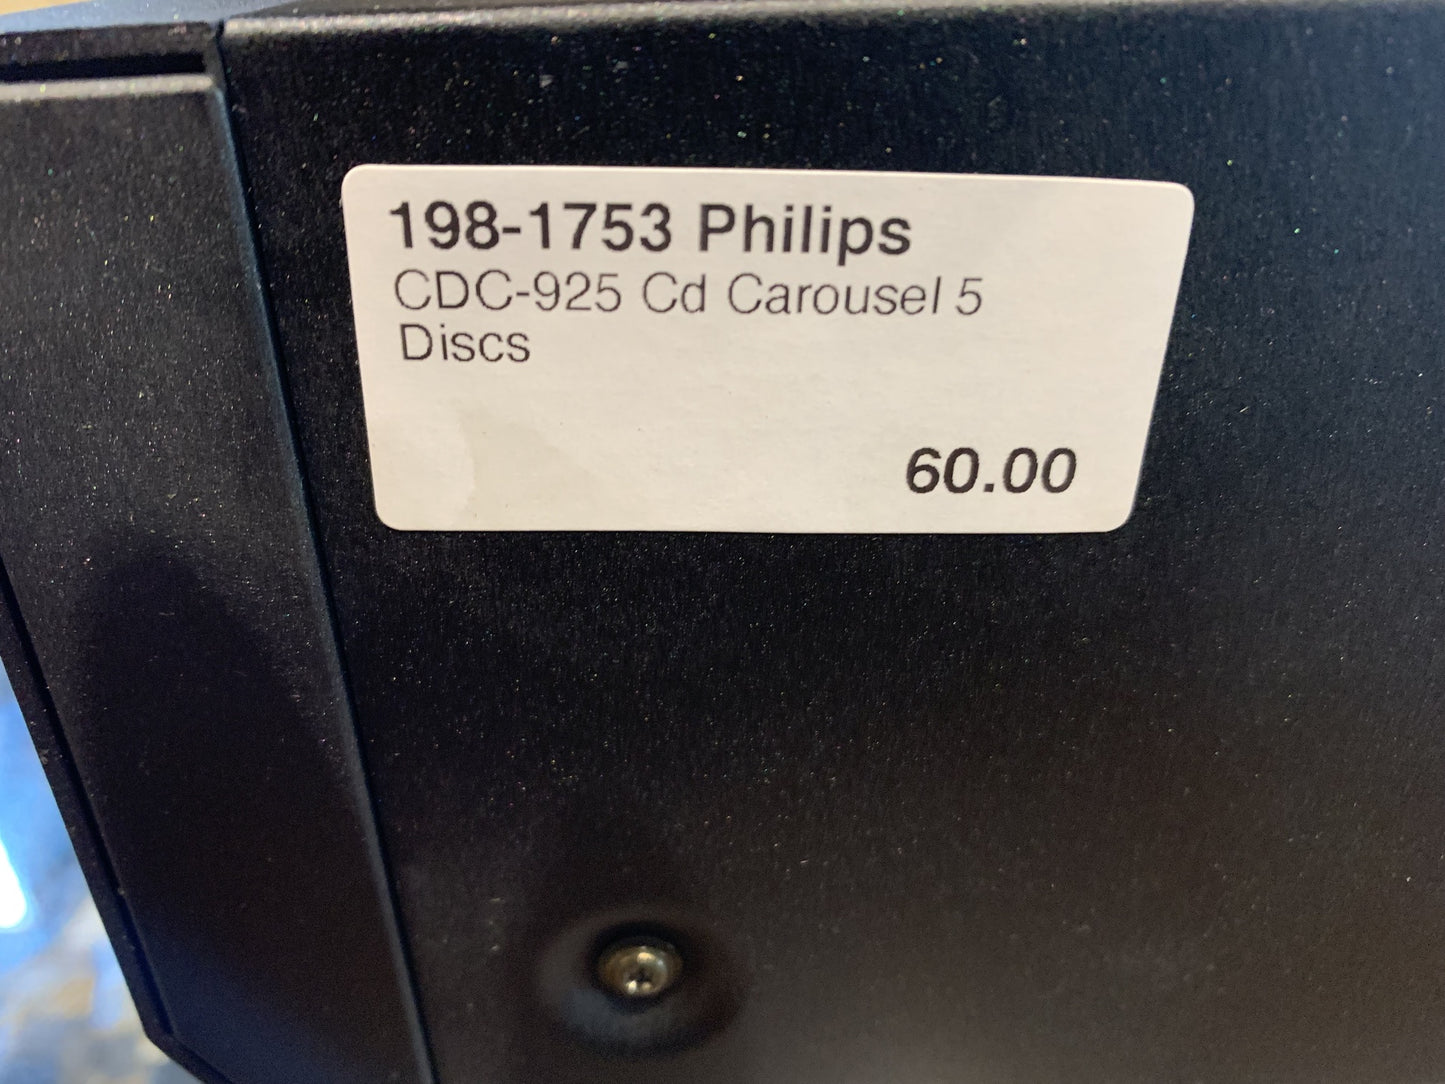 Philips CDC-925 Cd Carousel * 5 Discs